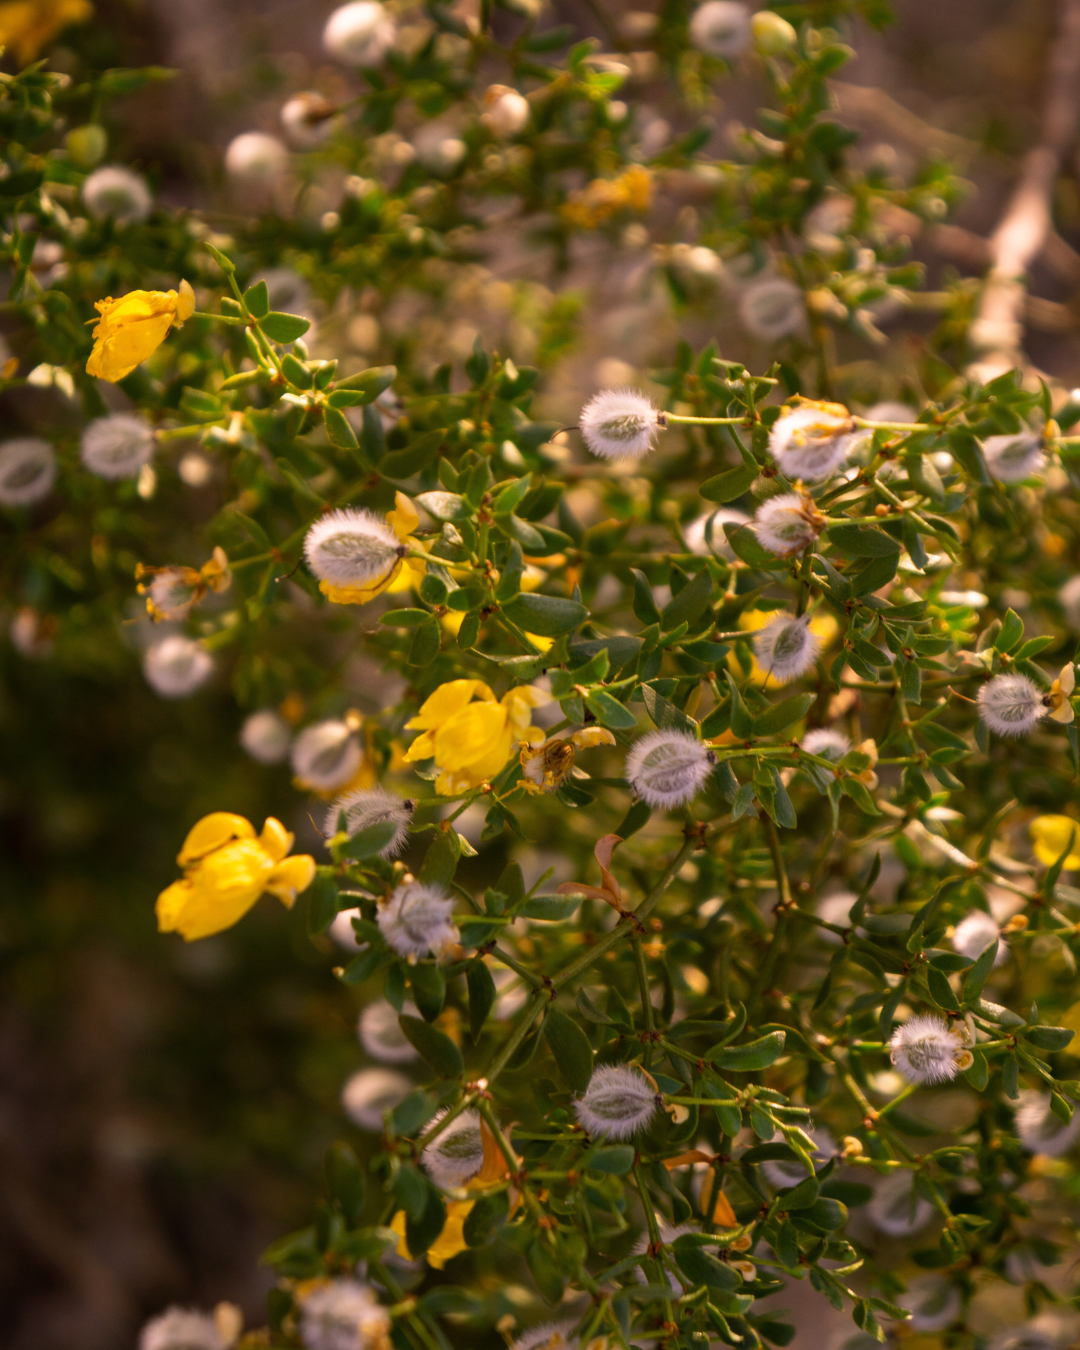 Creosote Bush in the Sonoran Desert